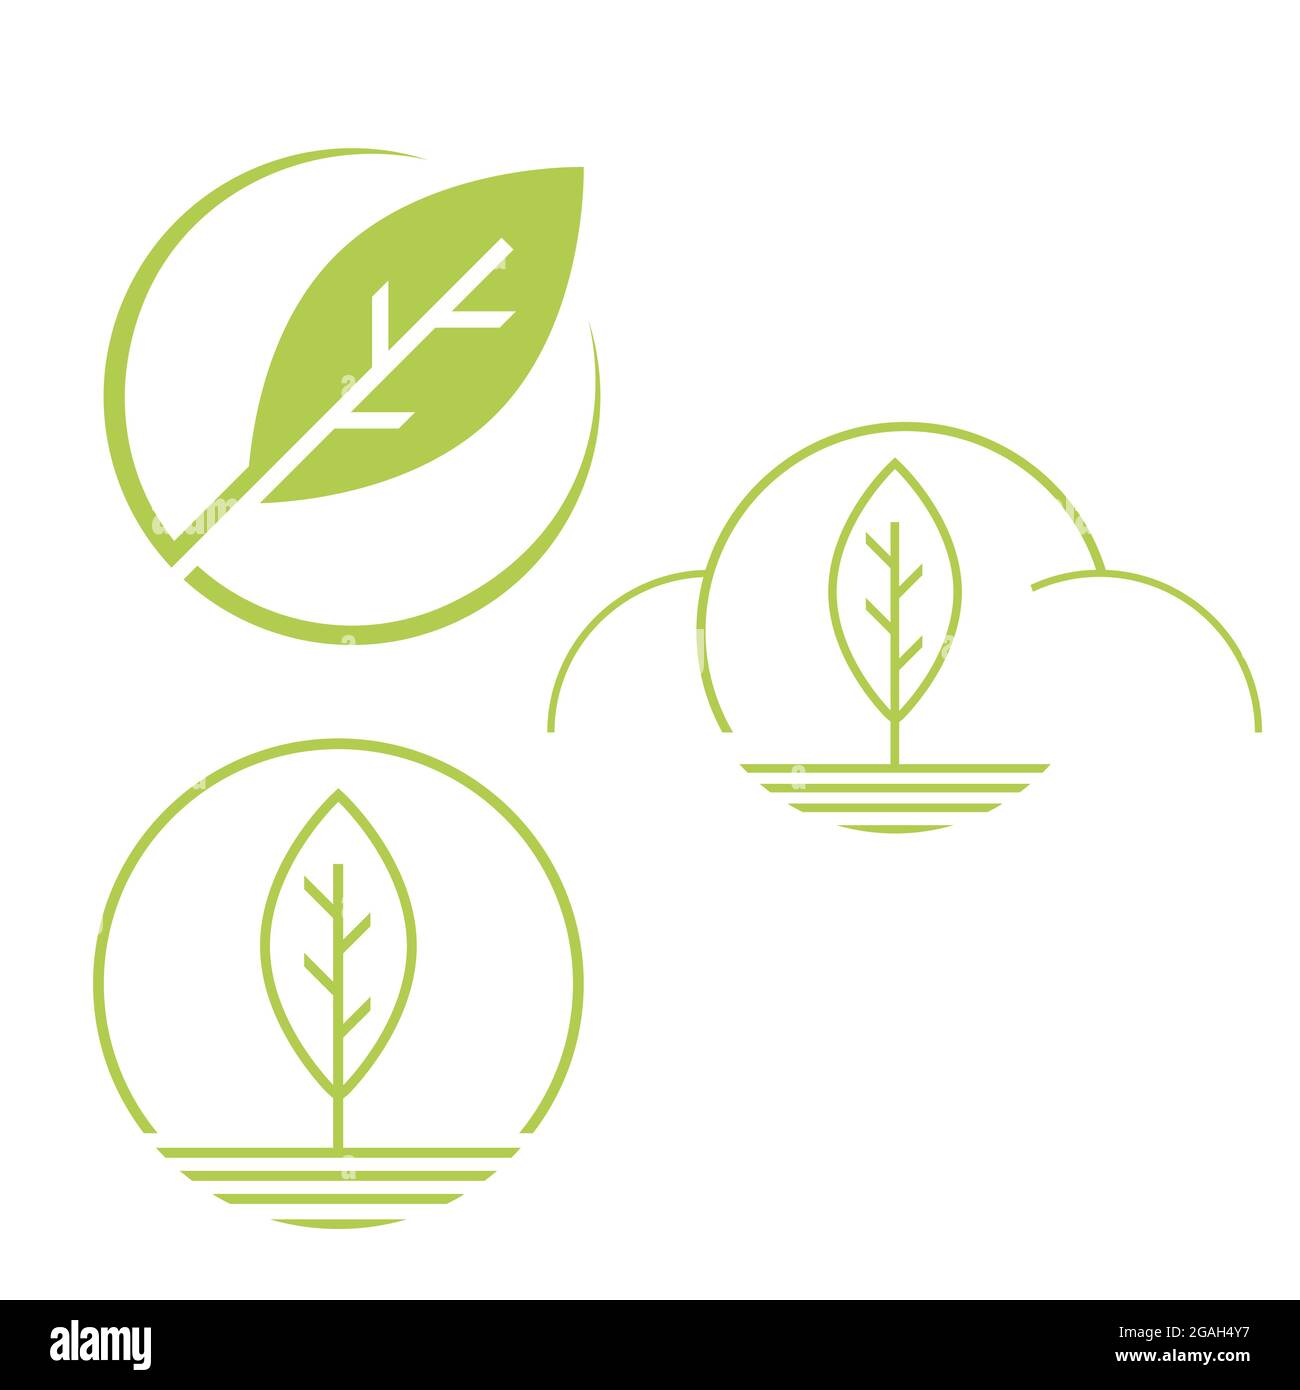 Natürliche Umwelt der Natur einfache umweltfreundliche Kreis grünes Blatt Logo Vektor-Elemente gesetzt Stock Vektor